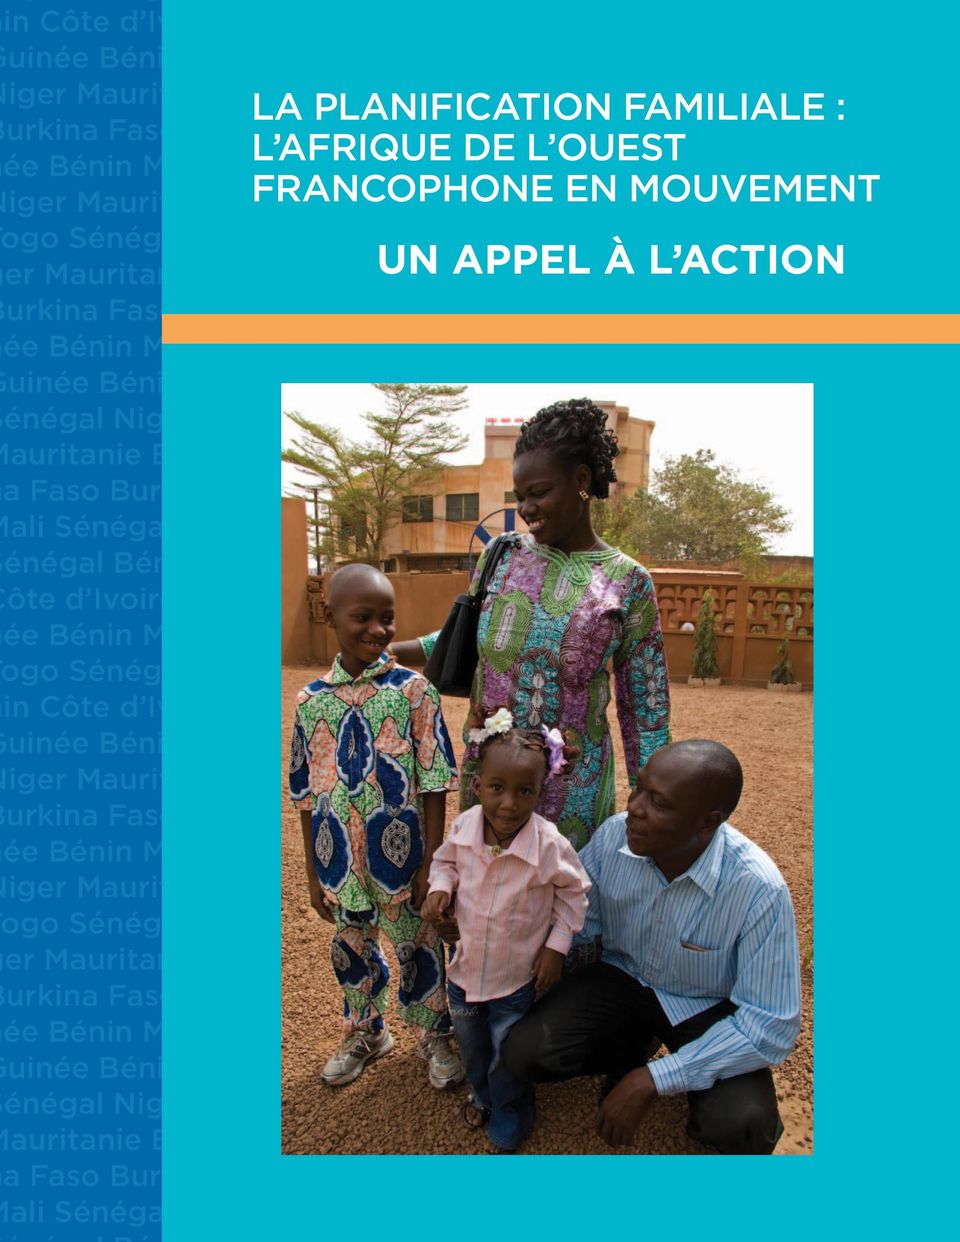 énégal Niger auritanie Burkia Faso Burkina ali SénégaTogo LA PLANIFICATION FAMILIALE : L AFRIQUE DE L OUEST FRANCOPHONE EN MOUVEMENT UN APPEL À L